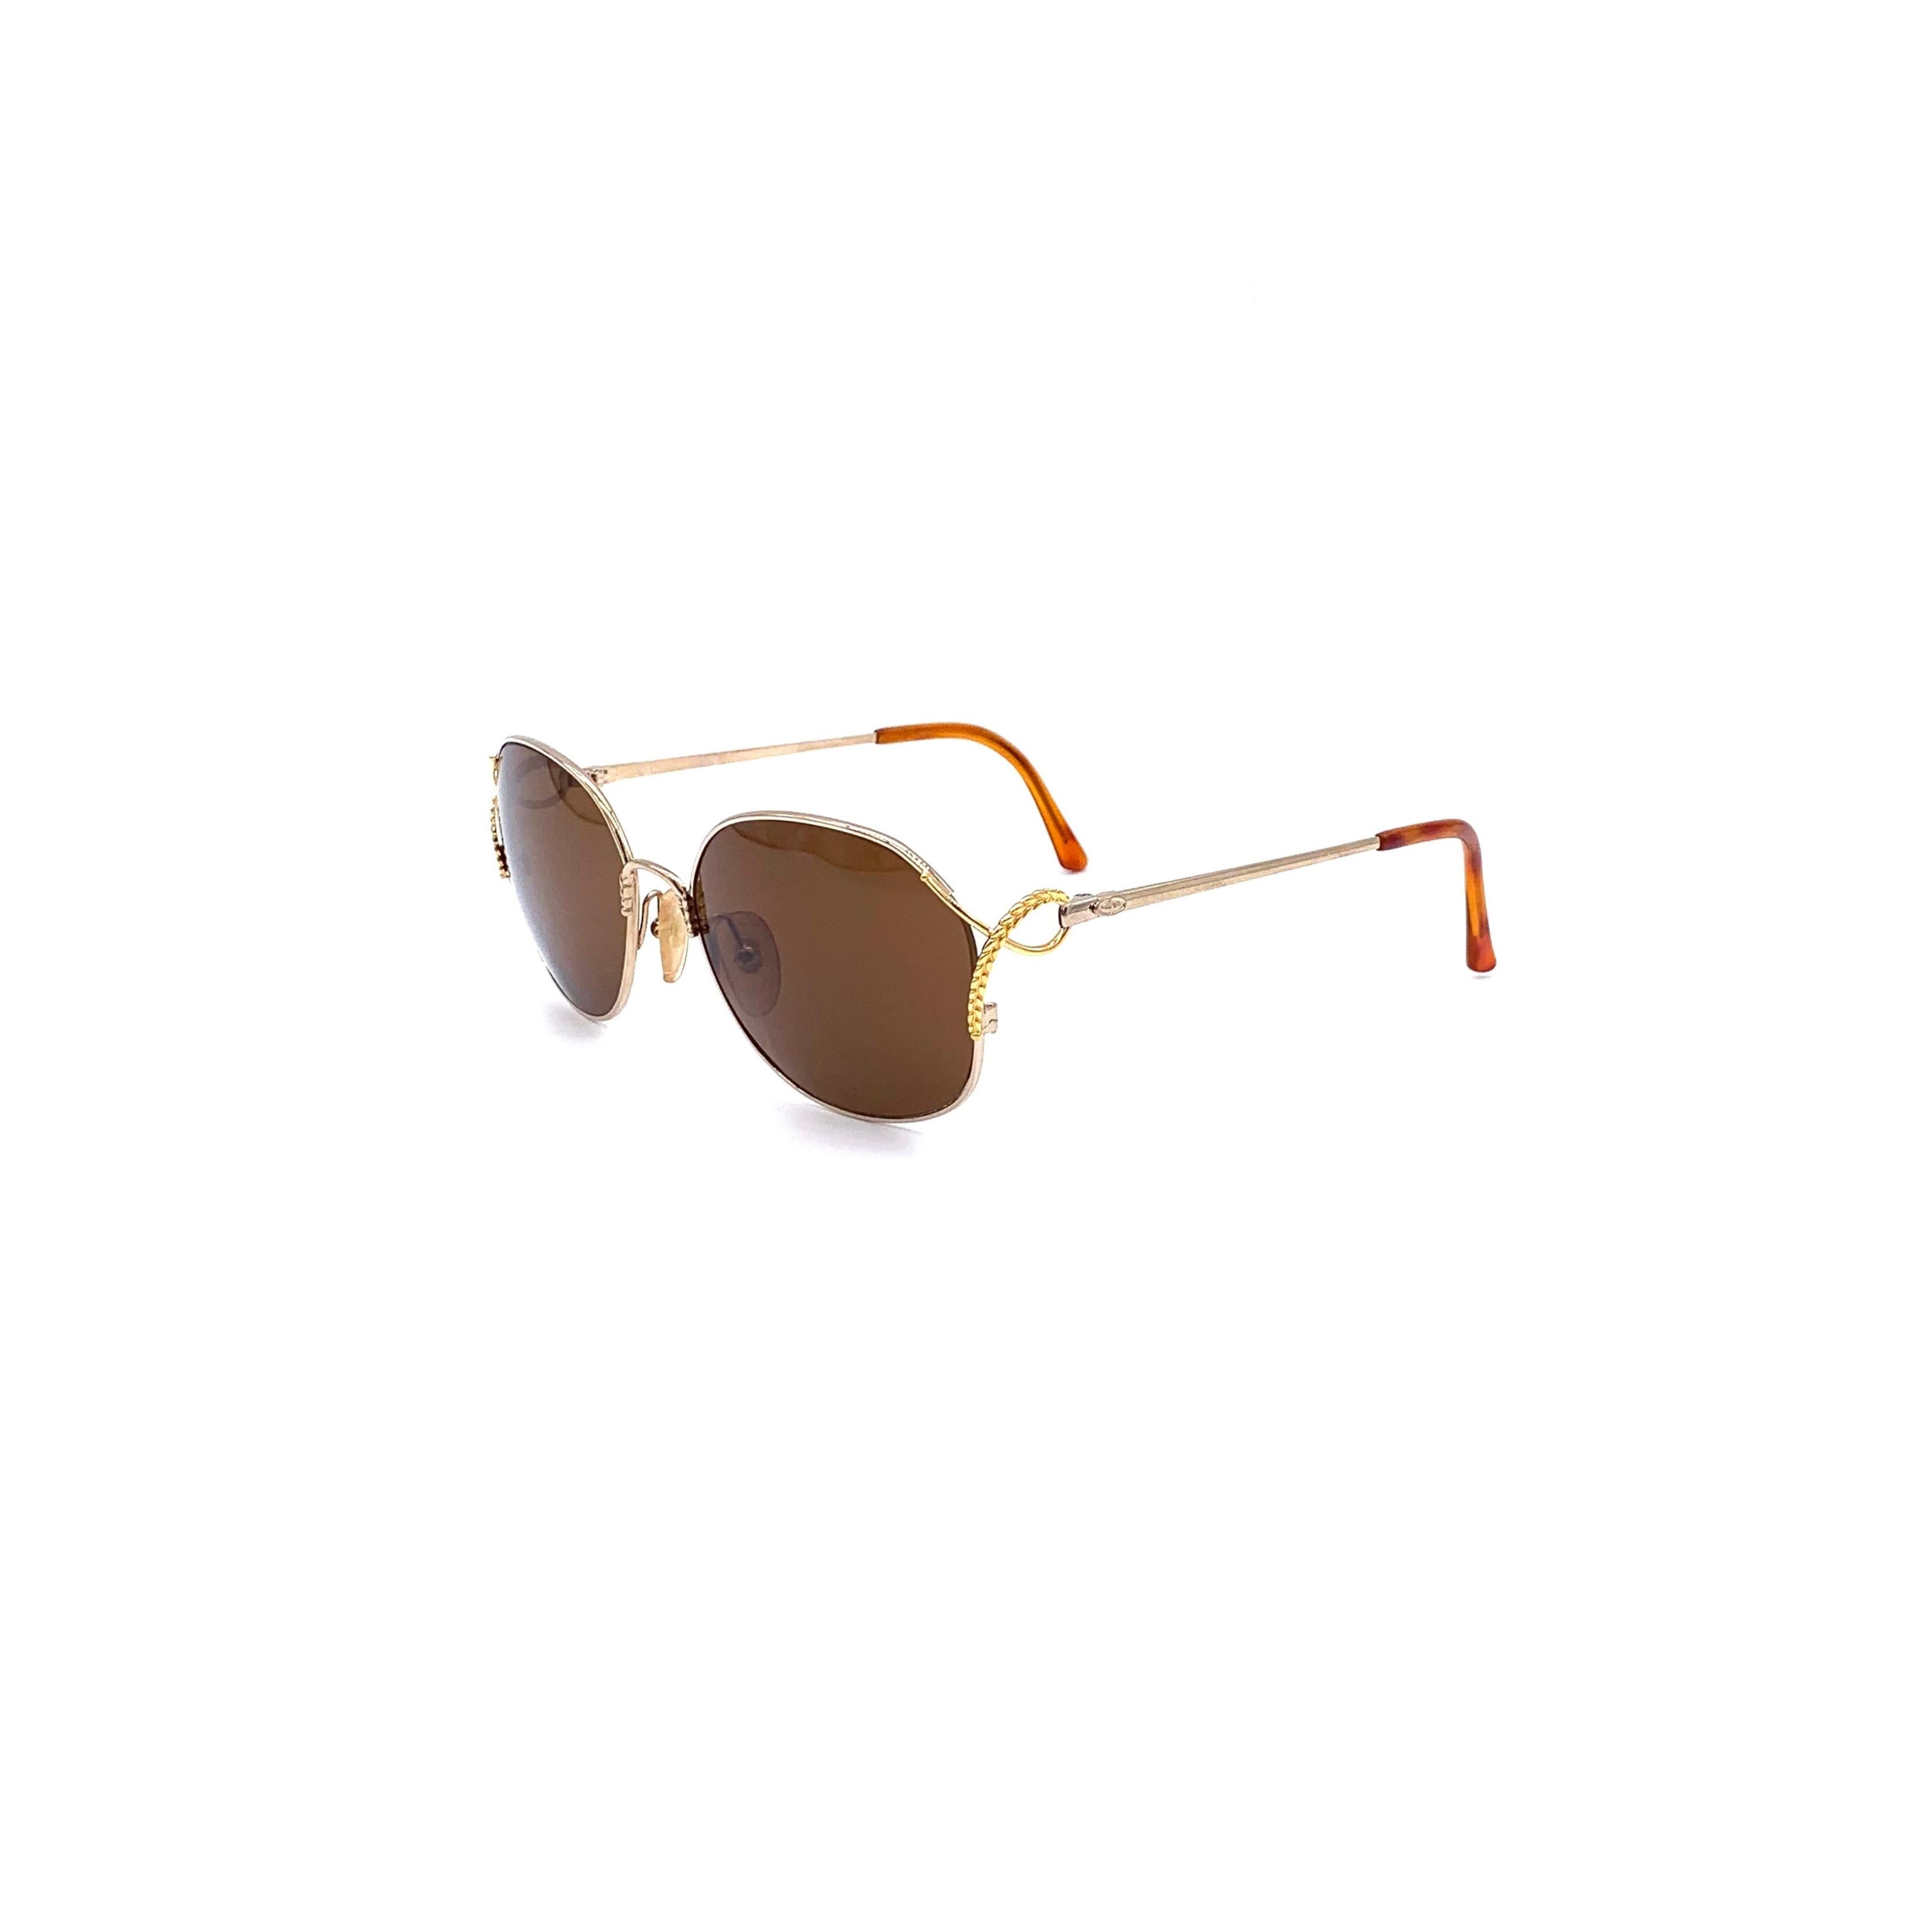 Ces lunettes de soleil classiques Christian Dior sont dotées d'une monture en métal doré et de verres Optyl de couleur marron. Un motif de feuilles distinctif accentue les côtés de la monture, offrant un attrait des années 80 et une protection